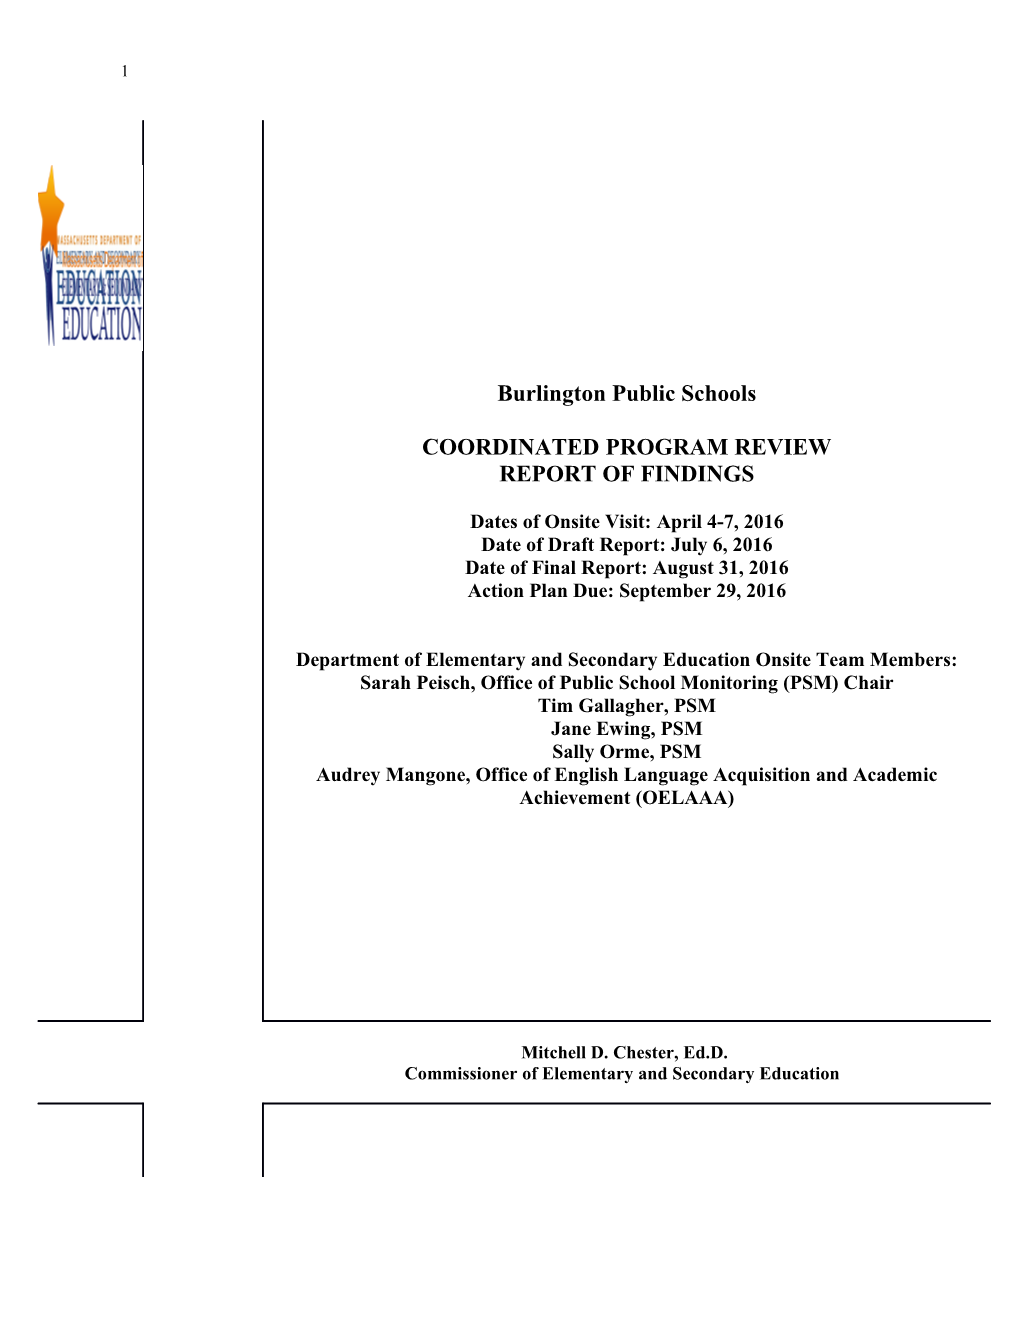 Burlington Public Schools CPR Final Report 2016